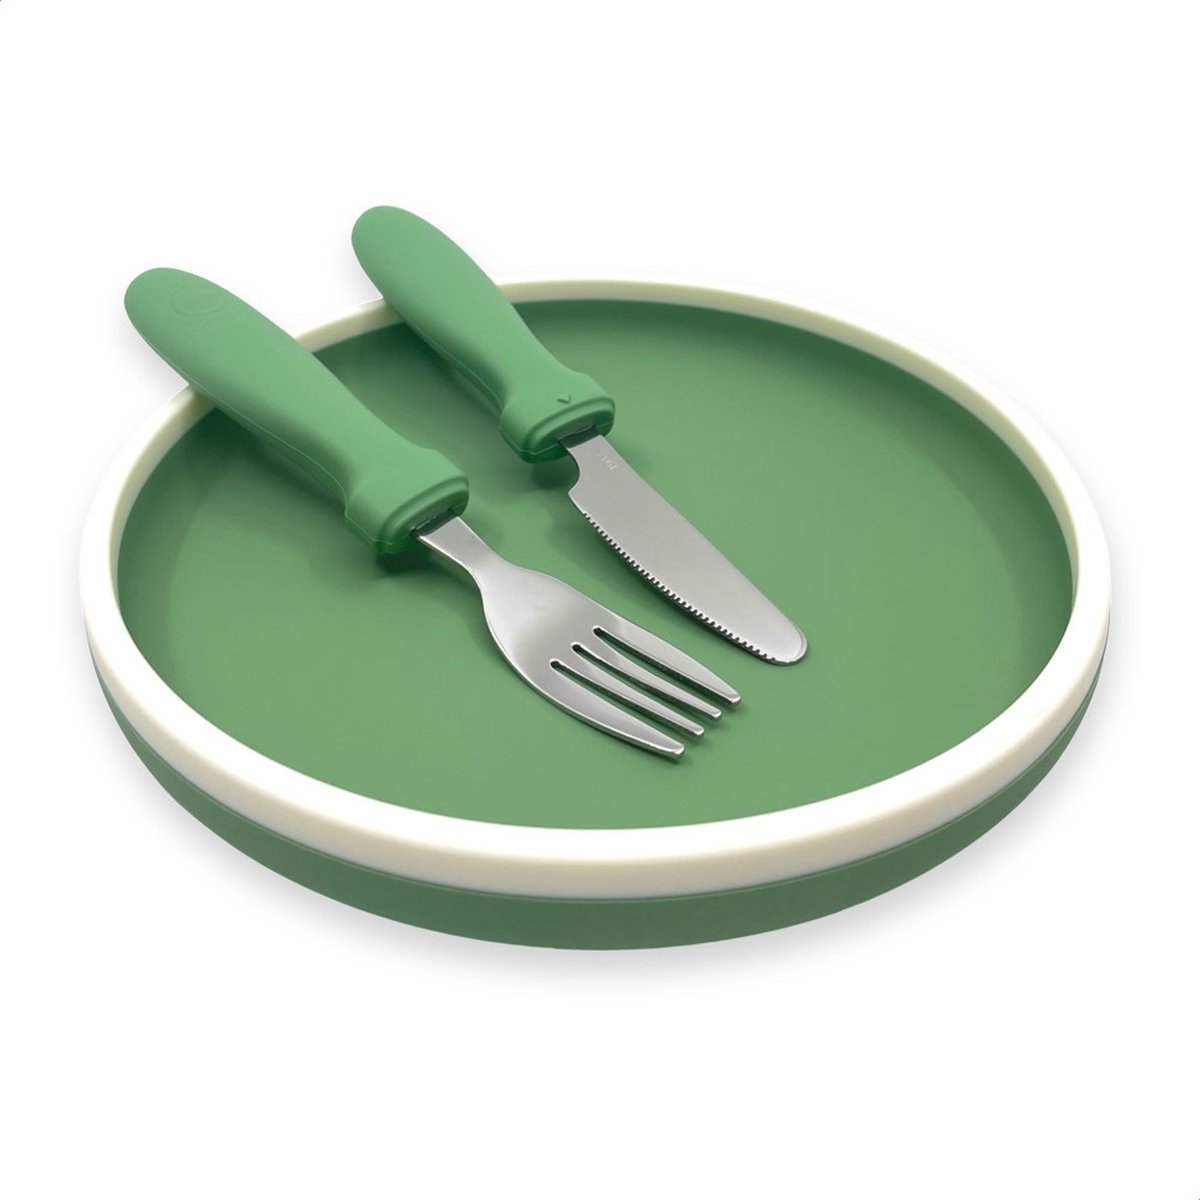 Smikkels - Siliconen bordje met mes en vork - Veilig Kinderservies - kinderbordje - kinderbestek - Duurzaam - Kleuter - Peuter - Groen